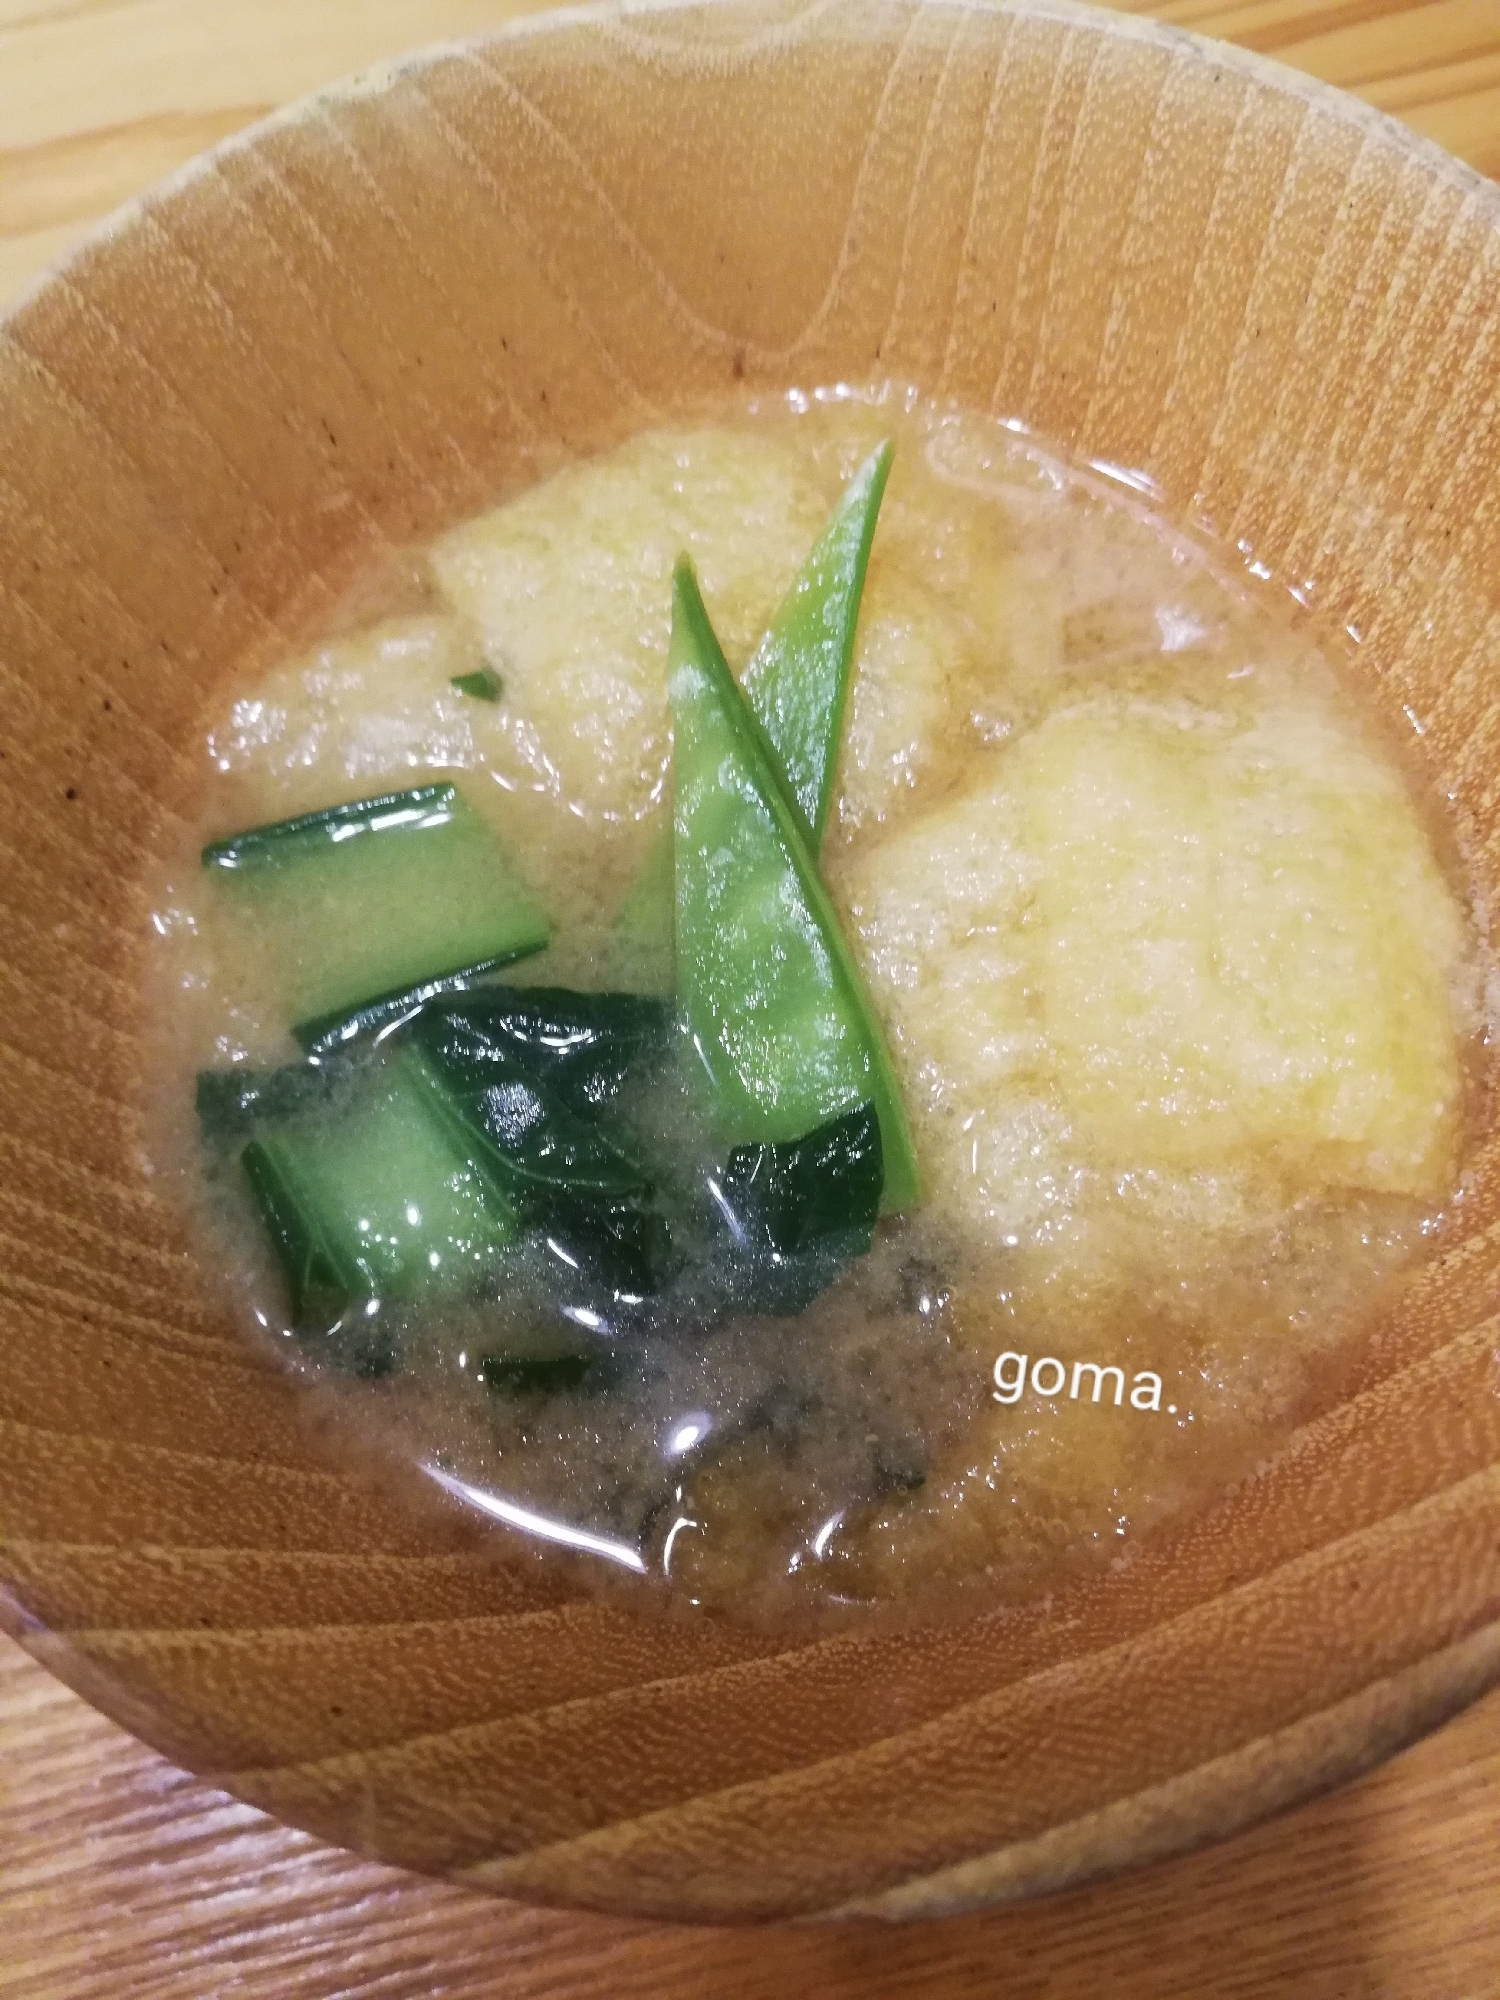 絹さやと小松菜と松山あげの味噌汁